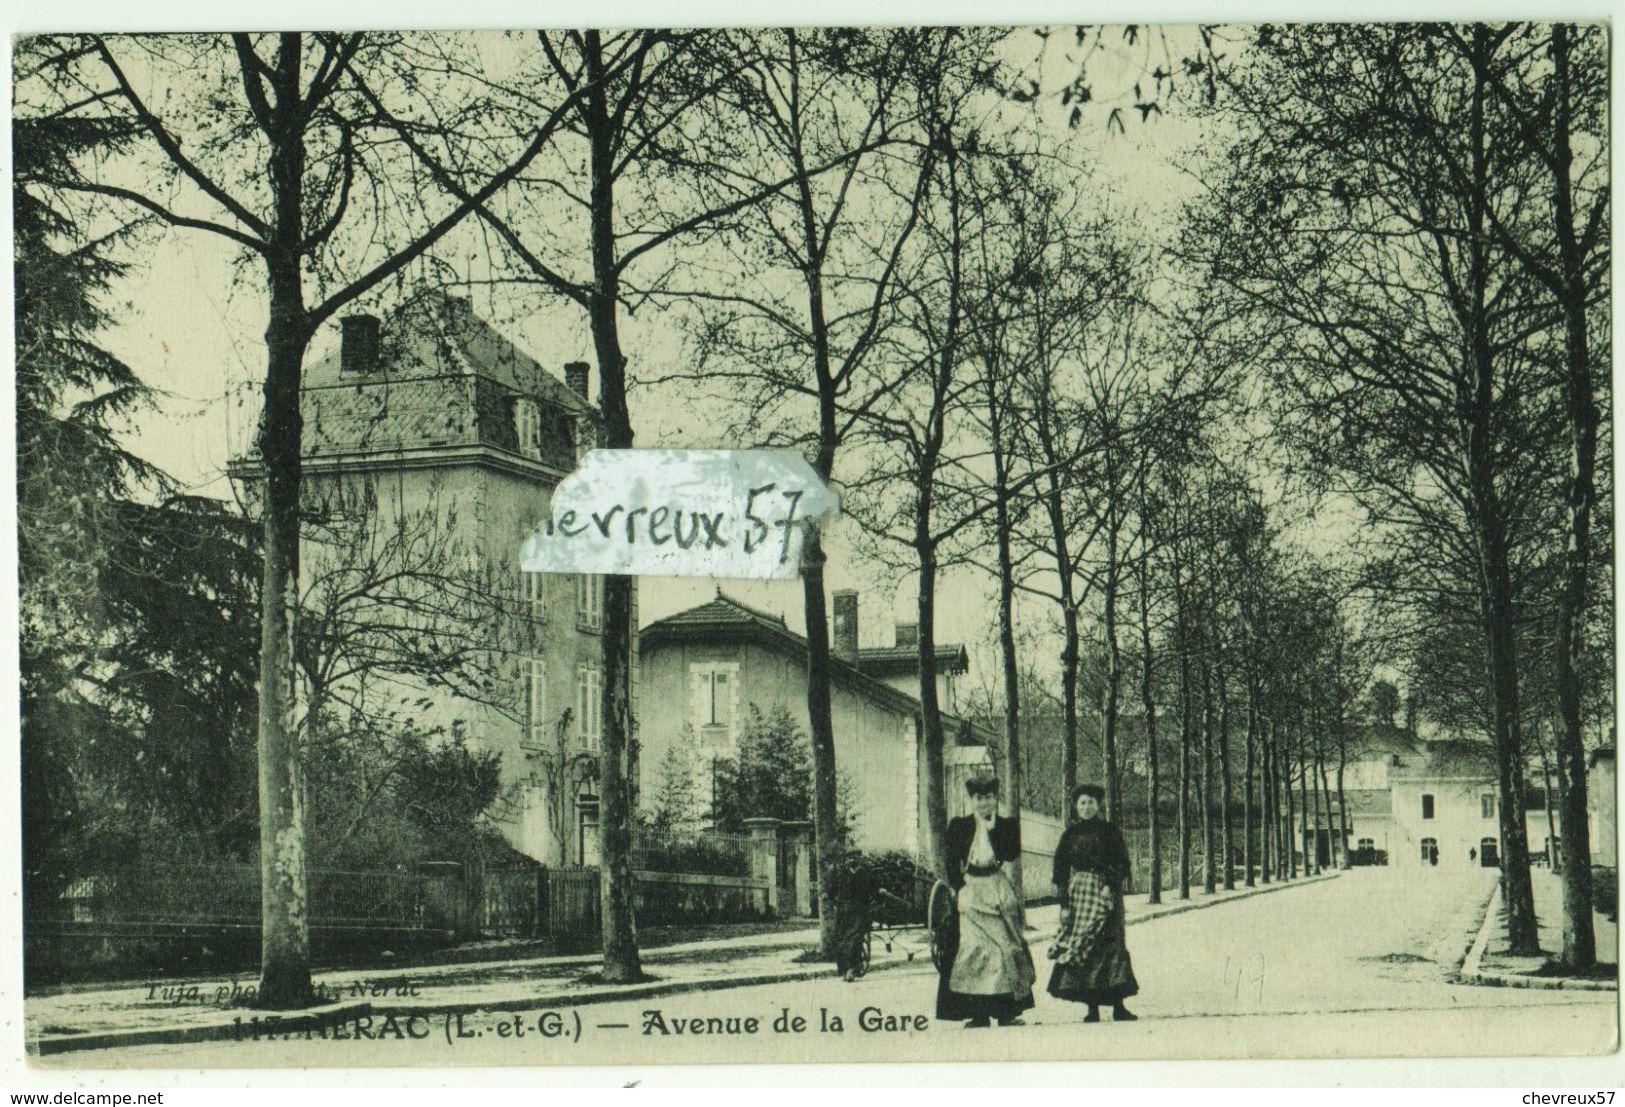 20 CARTES ANCIENNES DE FRANCE - LOT 1 - Villes Et Villages De France - Scan 2 Faces - 5 - 99 Cartes